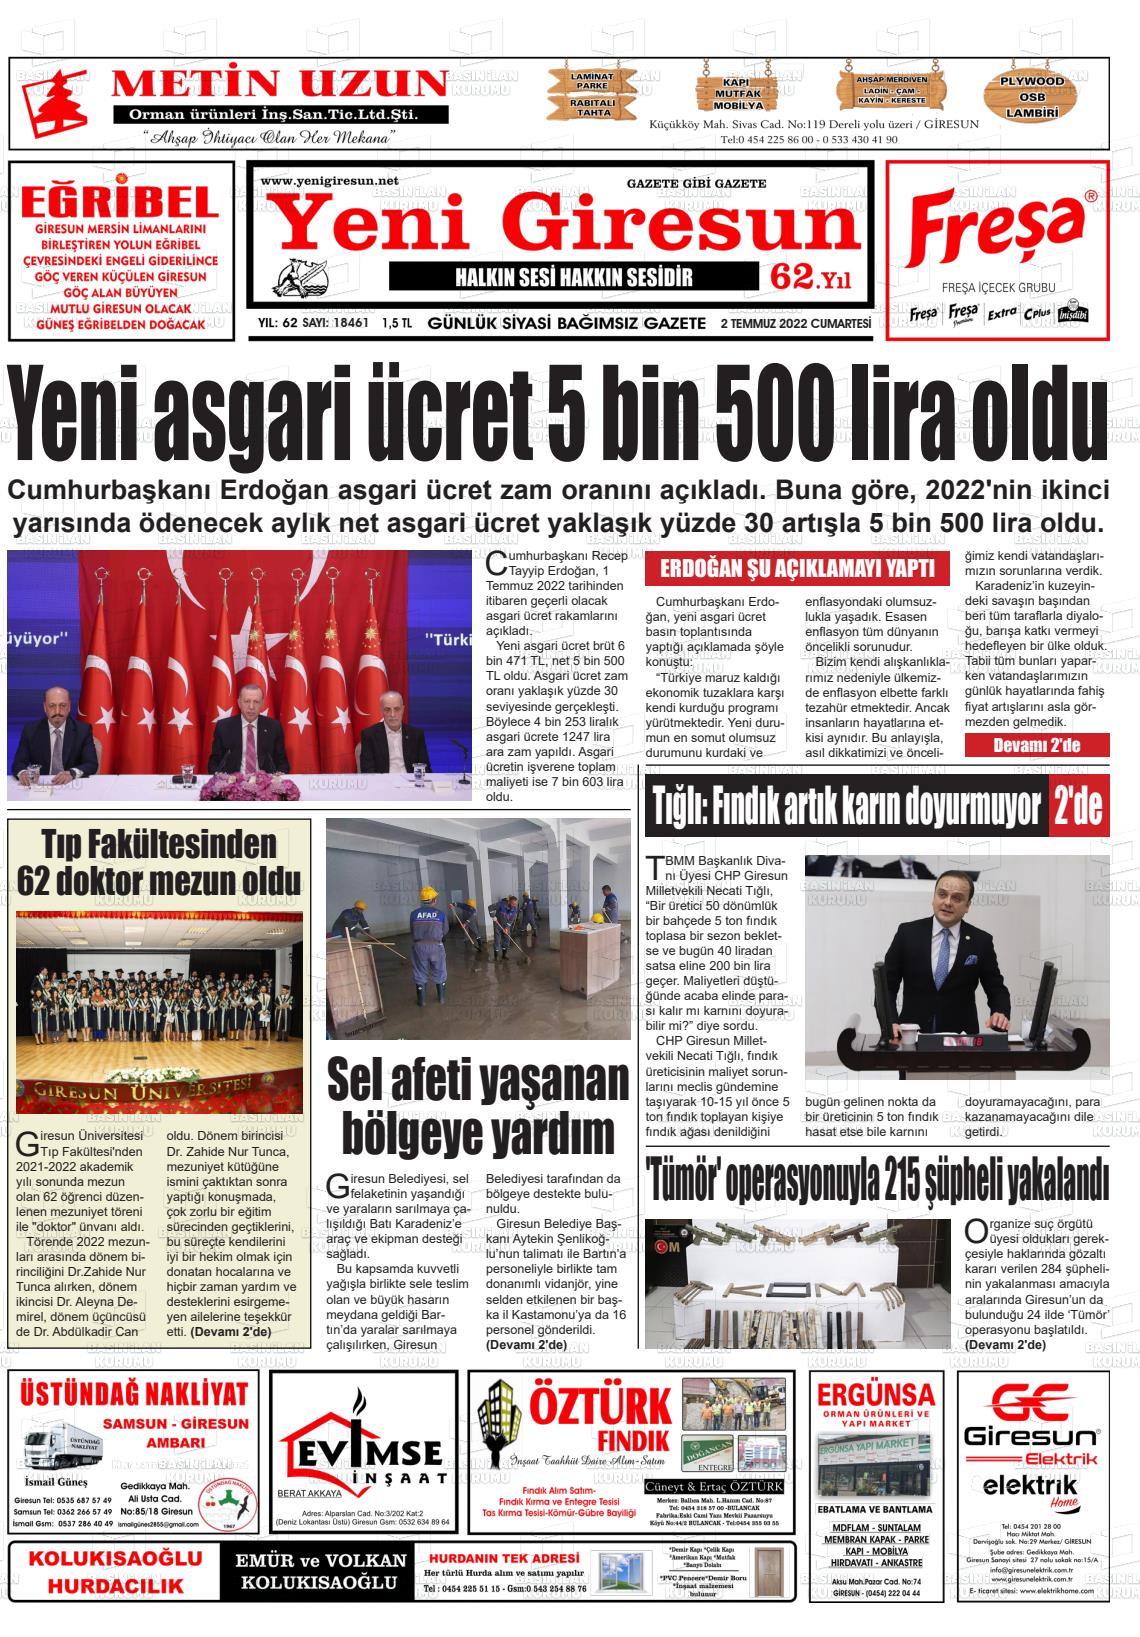 02 Temmuz 2022 Yeni Giresun Gazete Manşeti